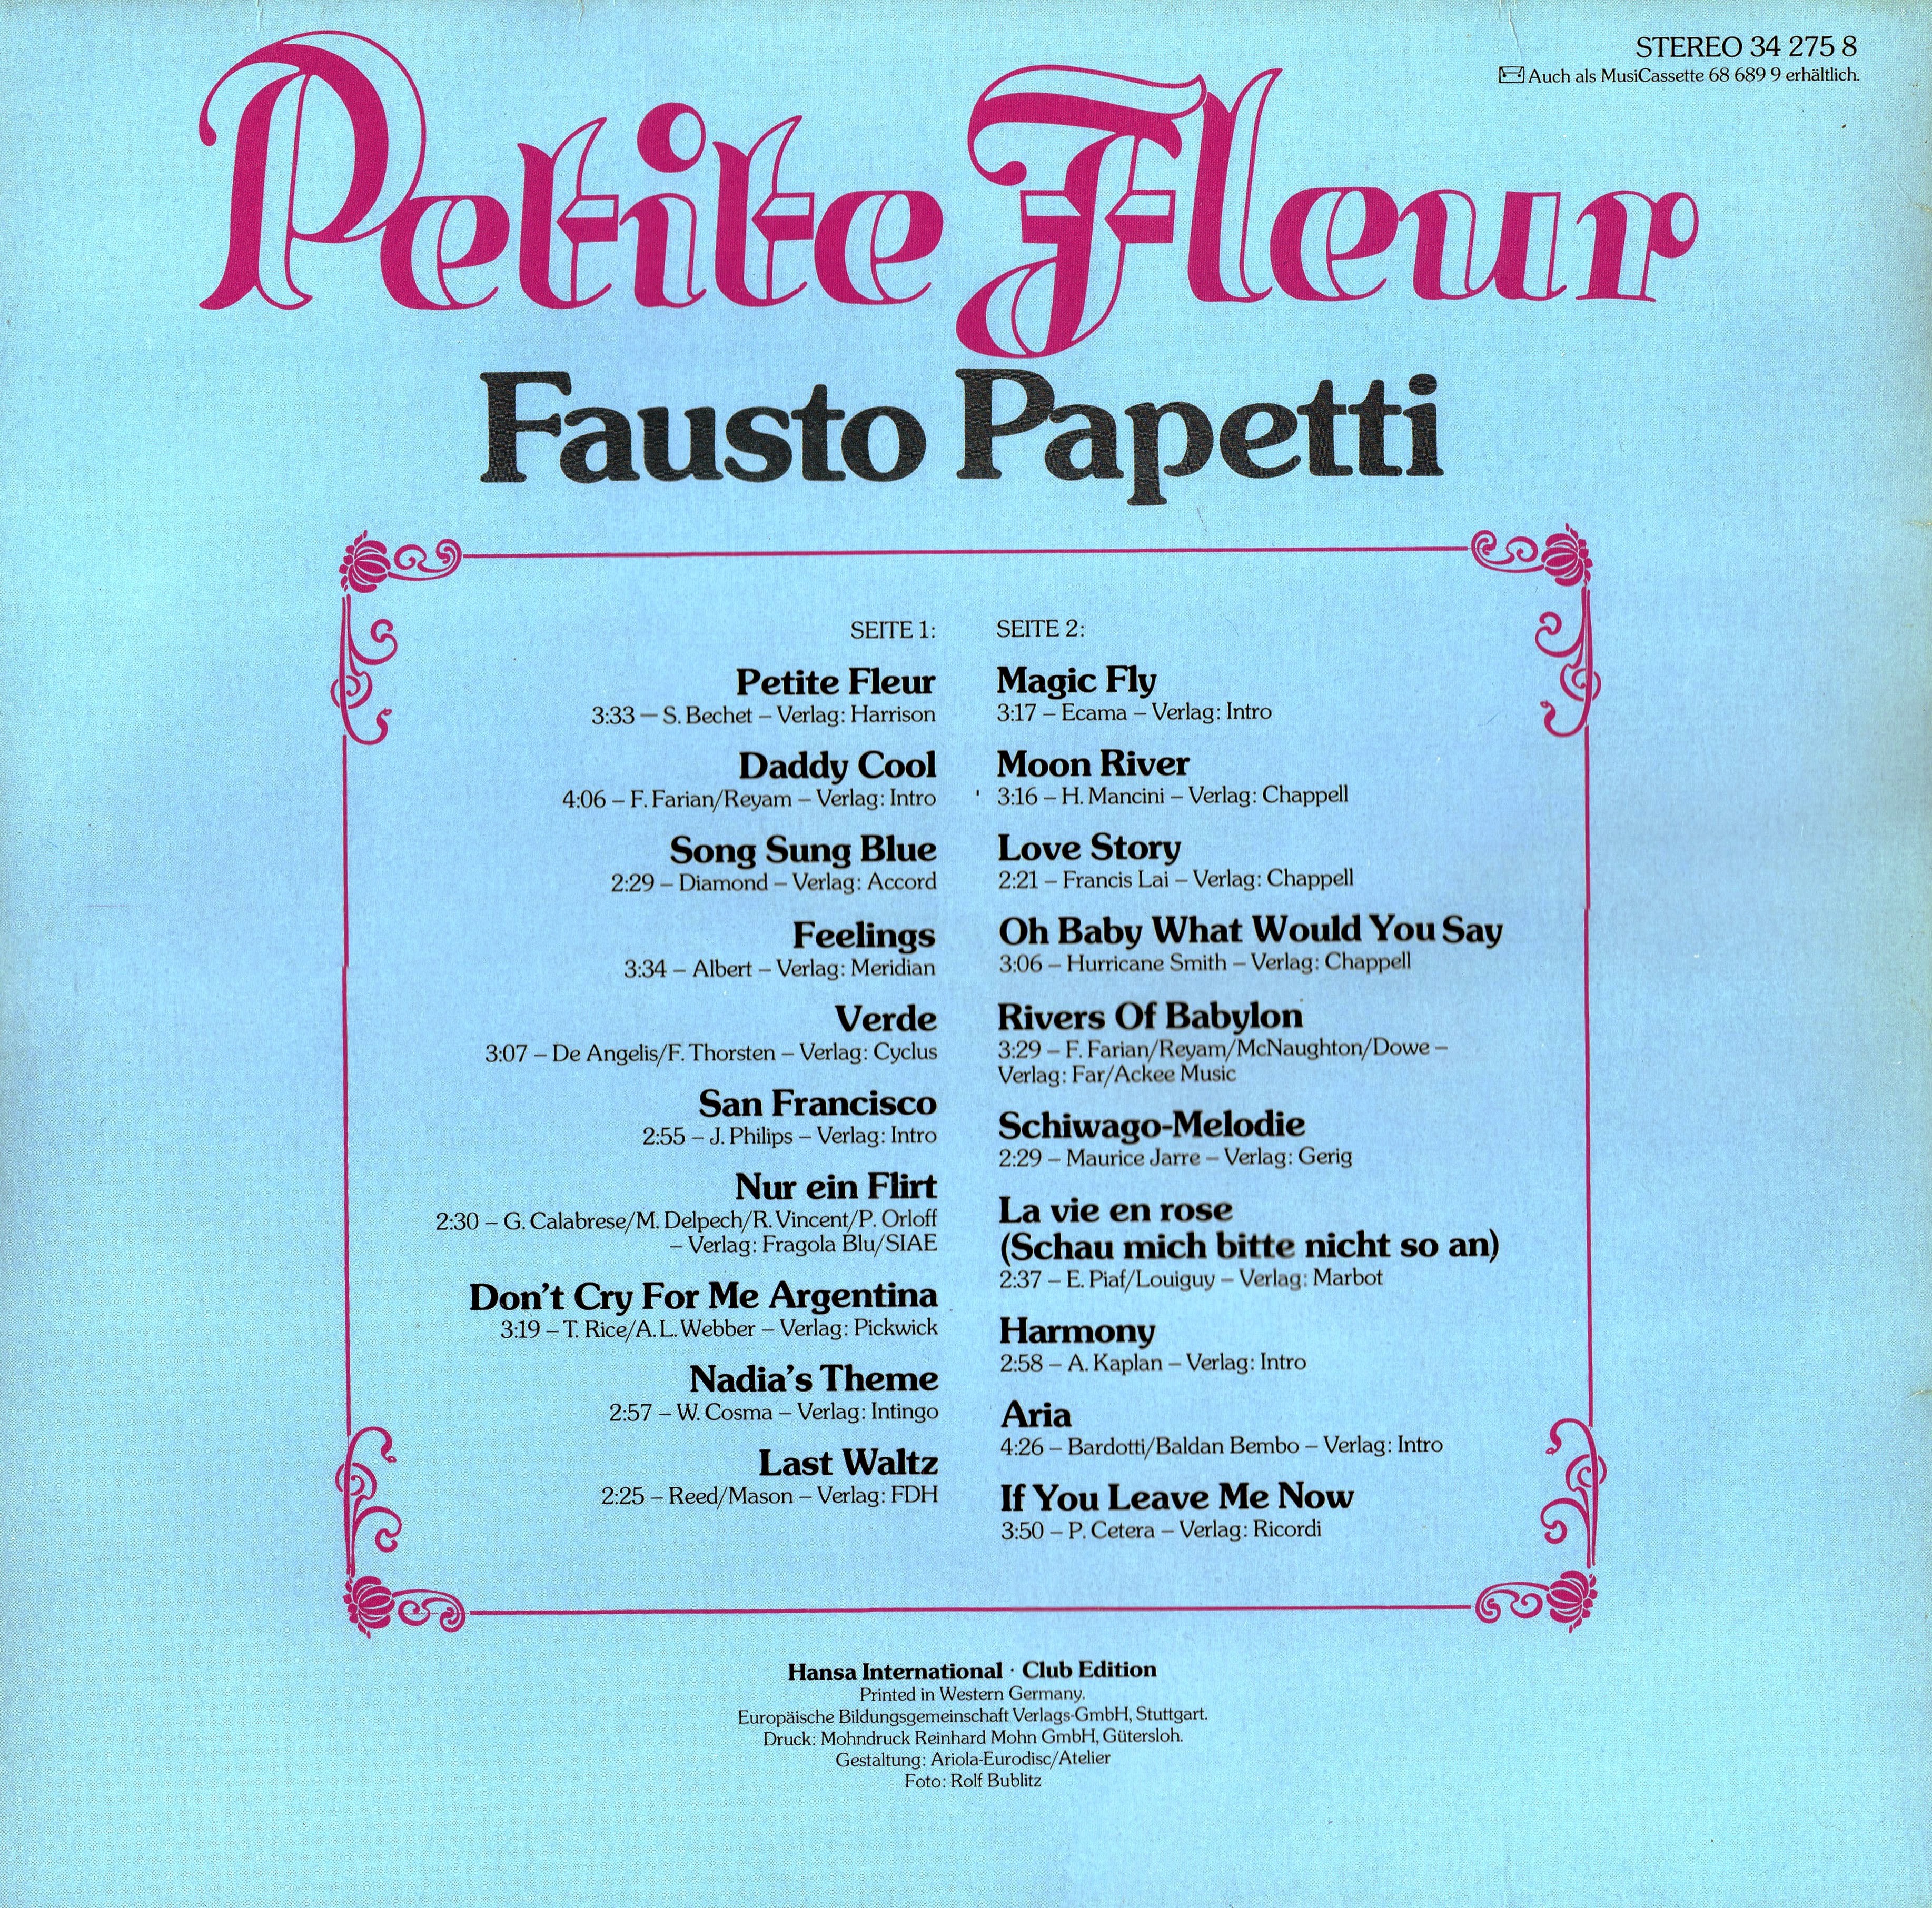 Release “Petite fleur” by Fausto Papetti - Cover art - MusicBrainz